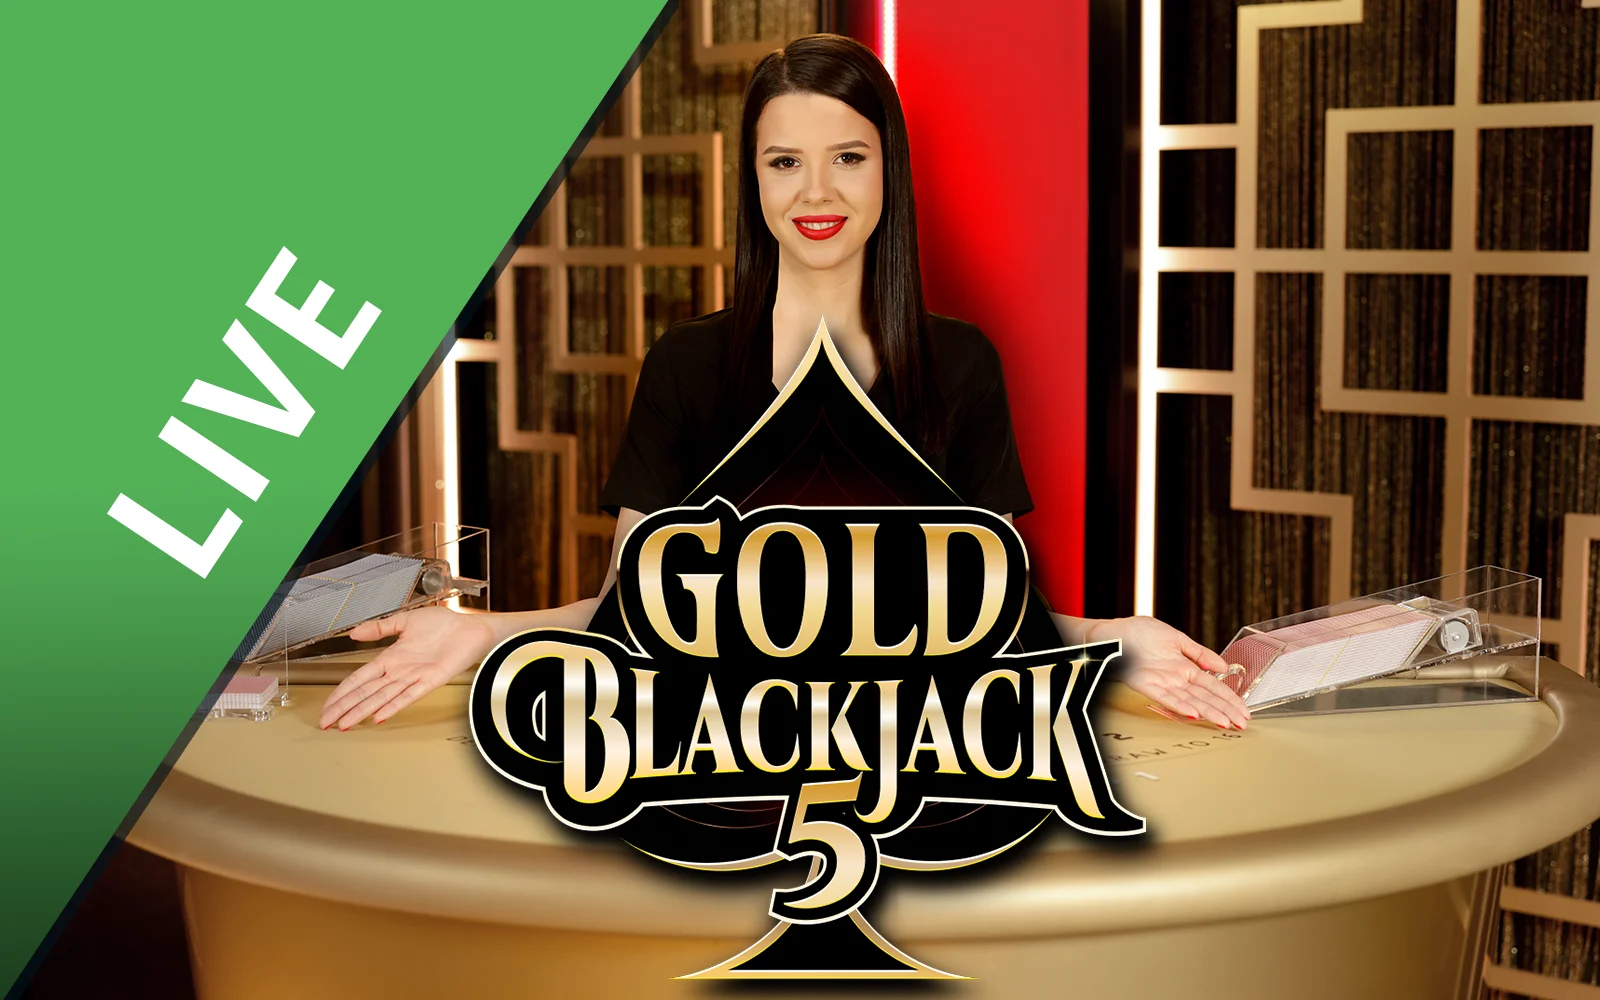 Speel Gold Blackjack 5 op Starcasino.be online casino